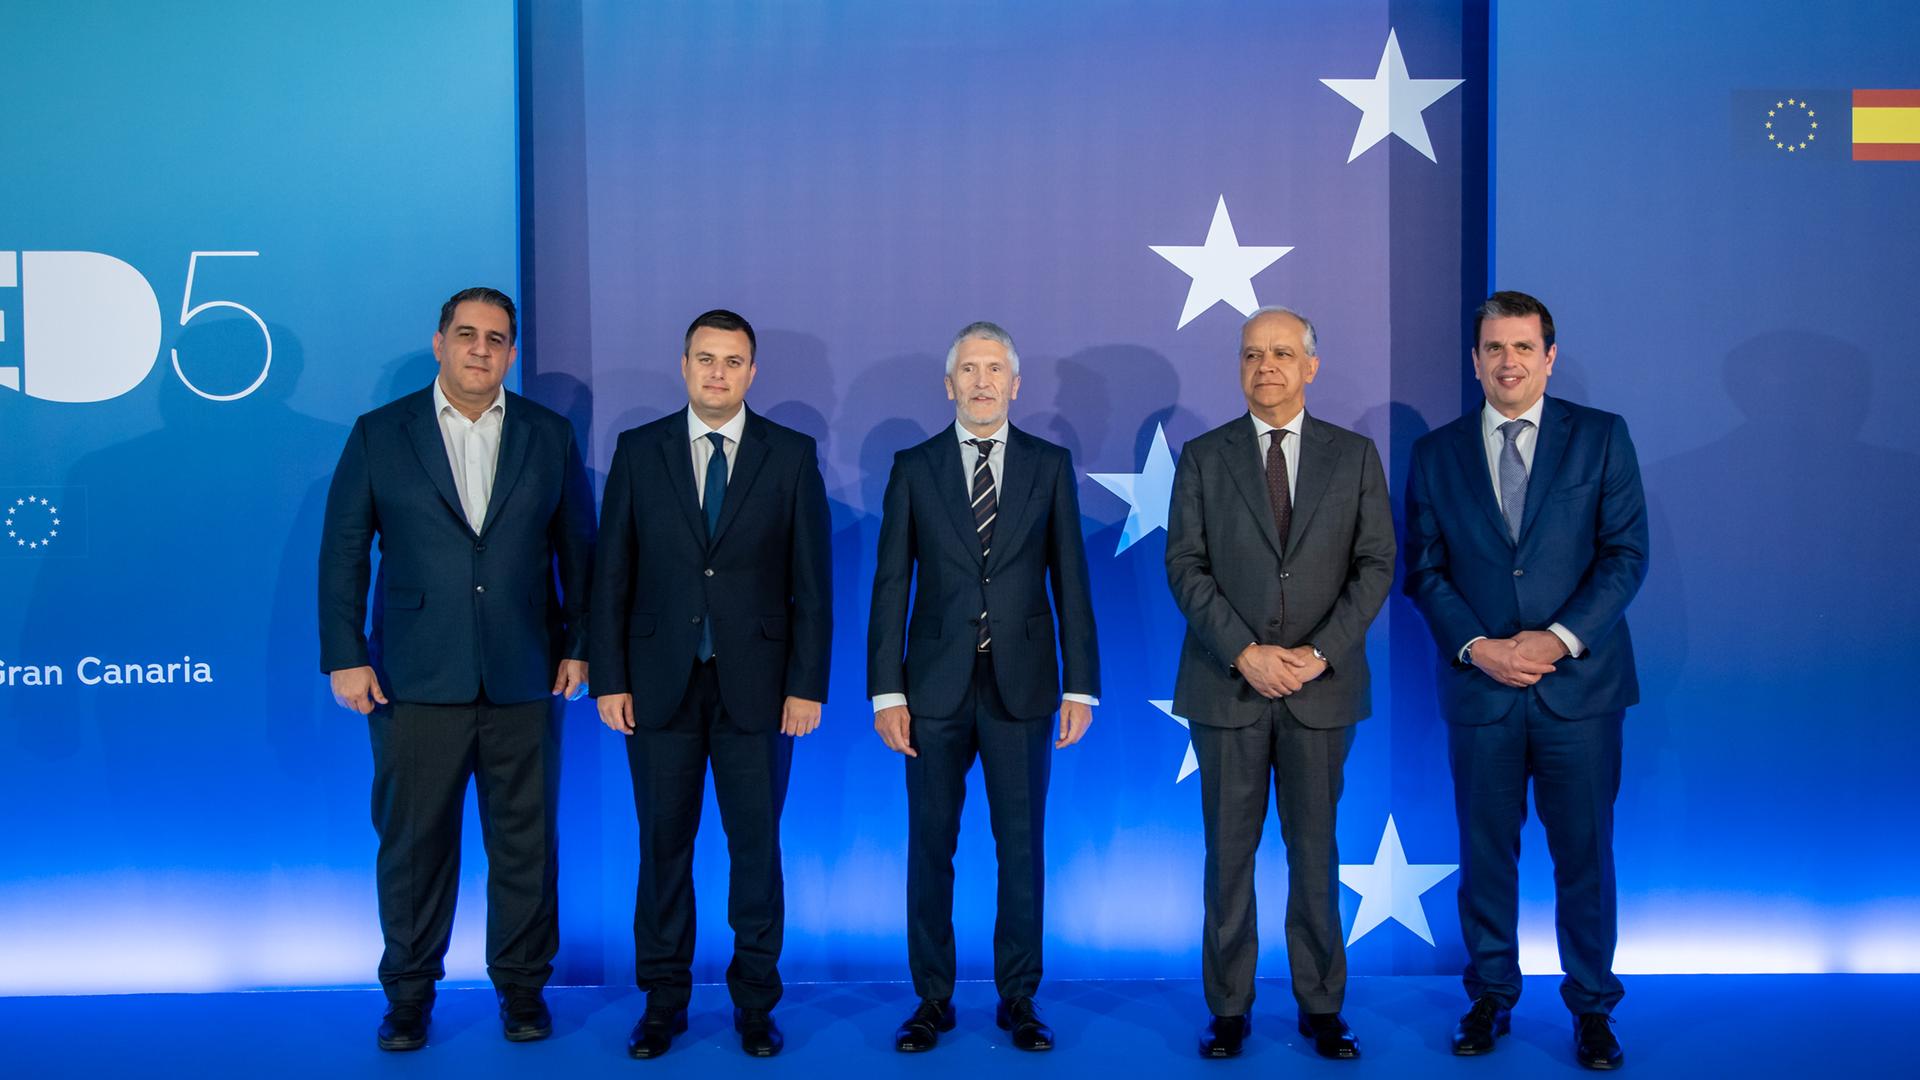 Minister aus fünf Mittelmeer-Anrainerstaaten stehen nebeneinader aufgereit für ein Gruppenfoto. Im Hintergrund sind fünf goldene Europa-Sterne auf einem blauen Hintergrund zu sehem.